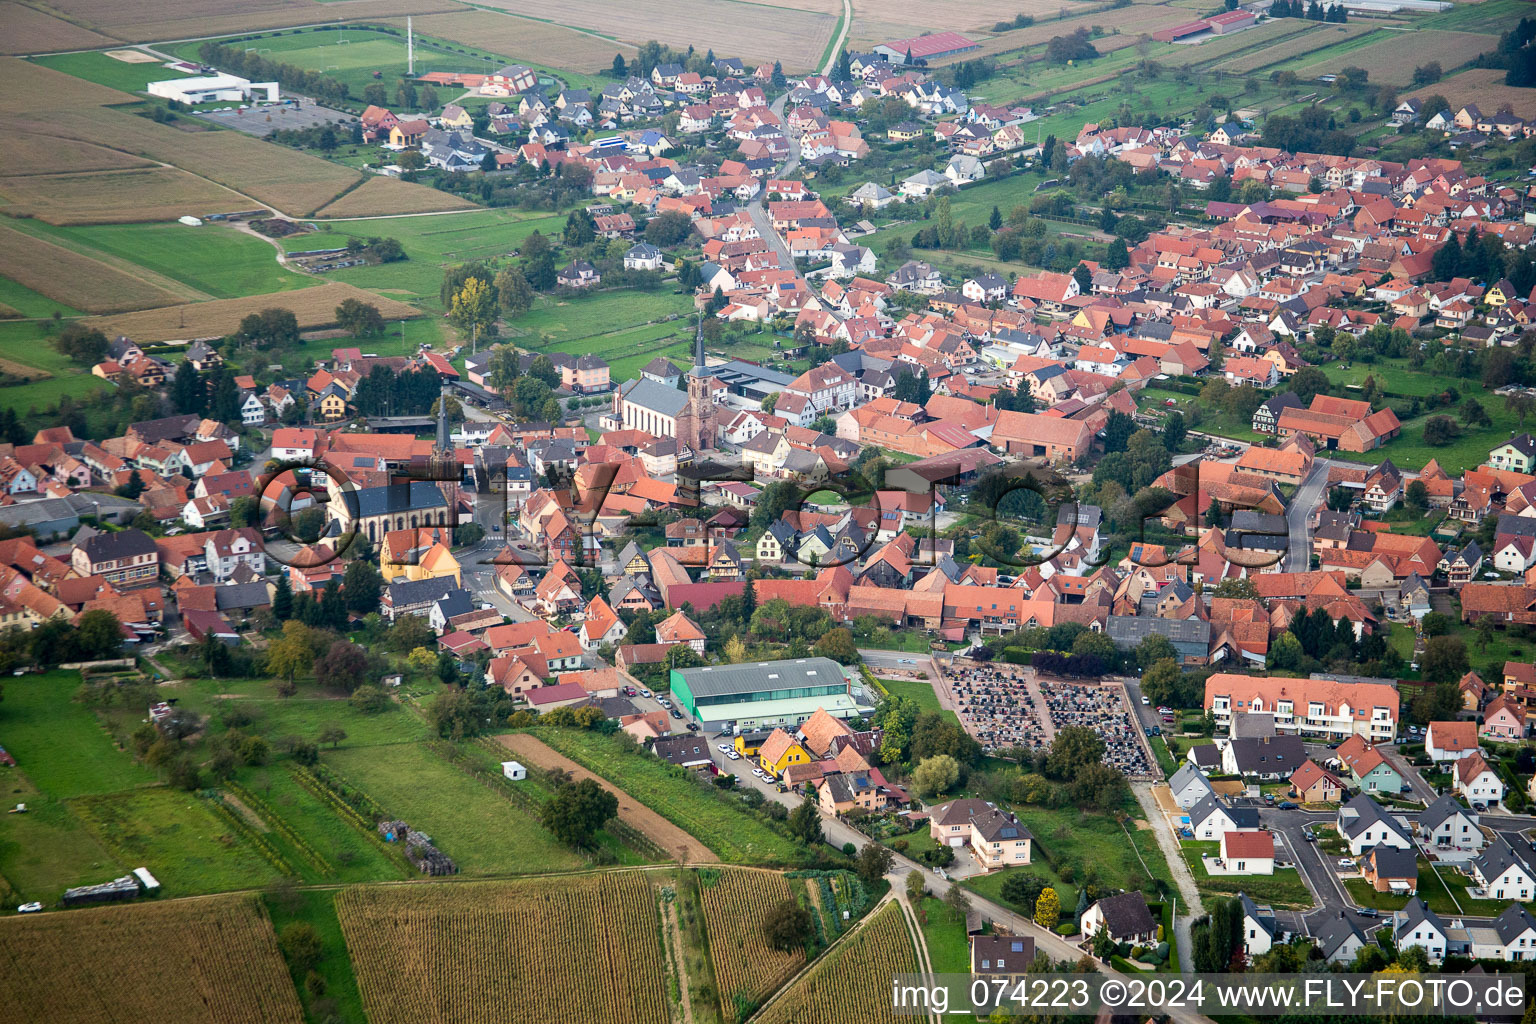 Village view in Weitbruch in Grand Est, France